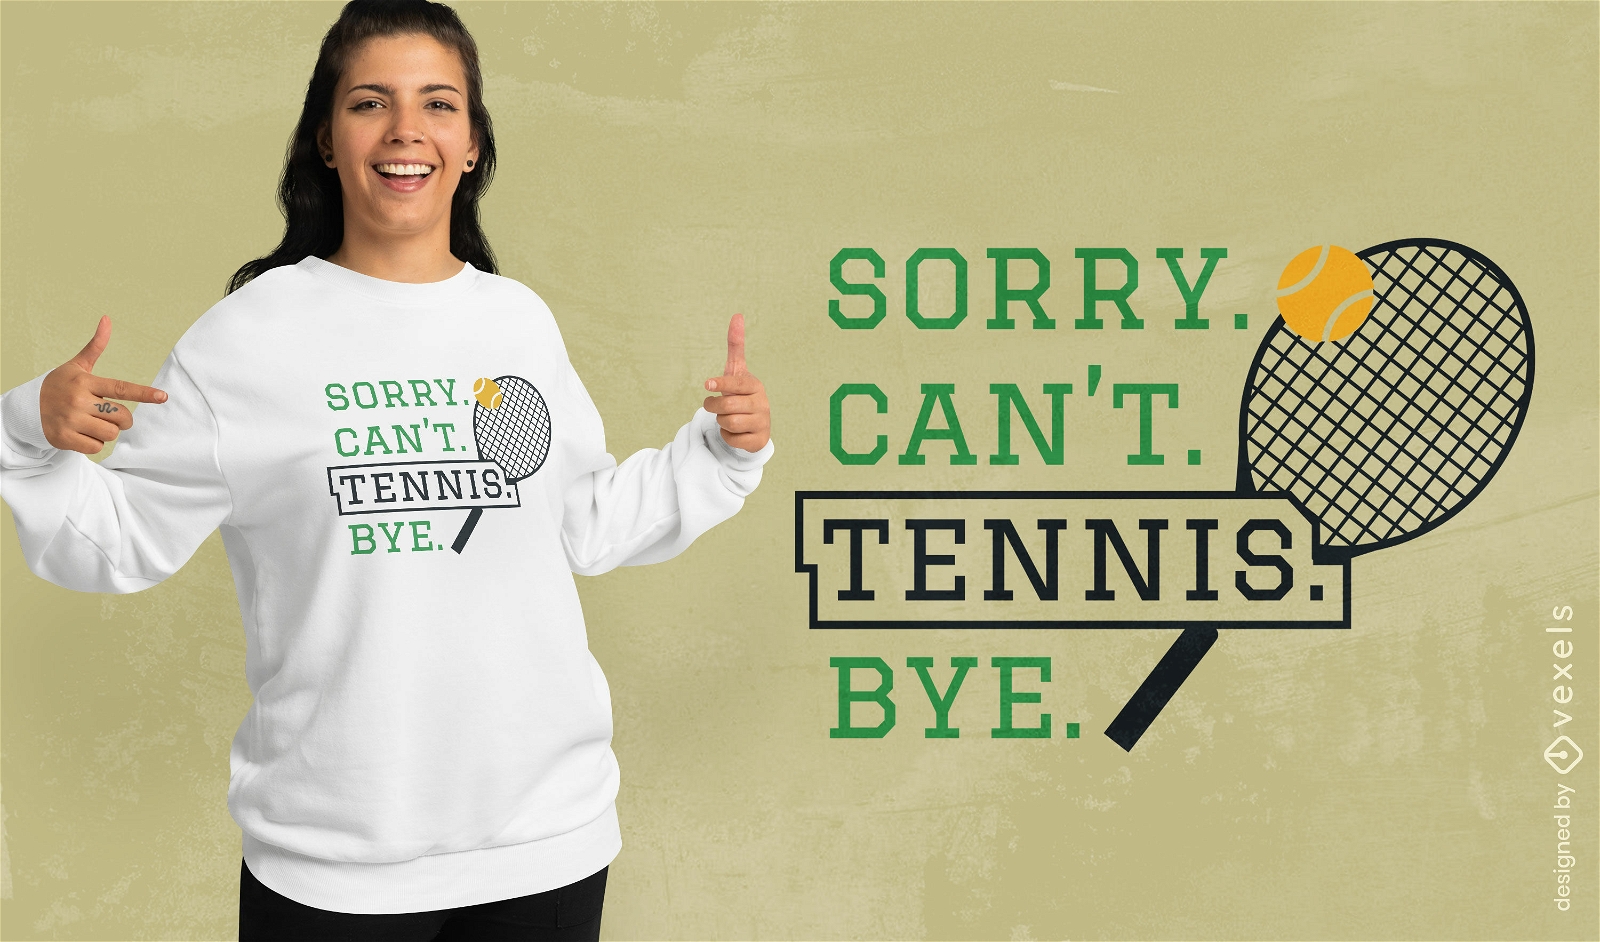 Dise?o de camiseta con una declaraci?n de tenis humor?stica.